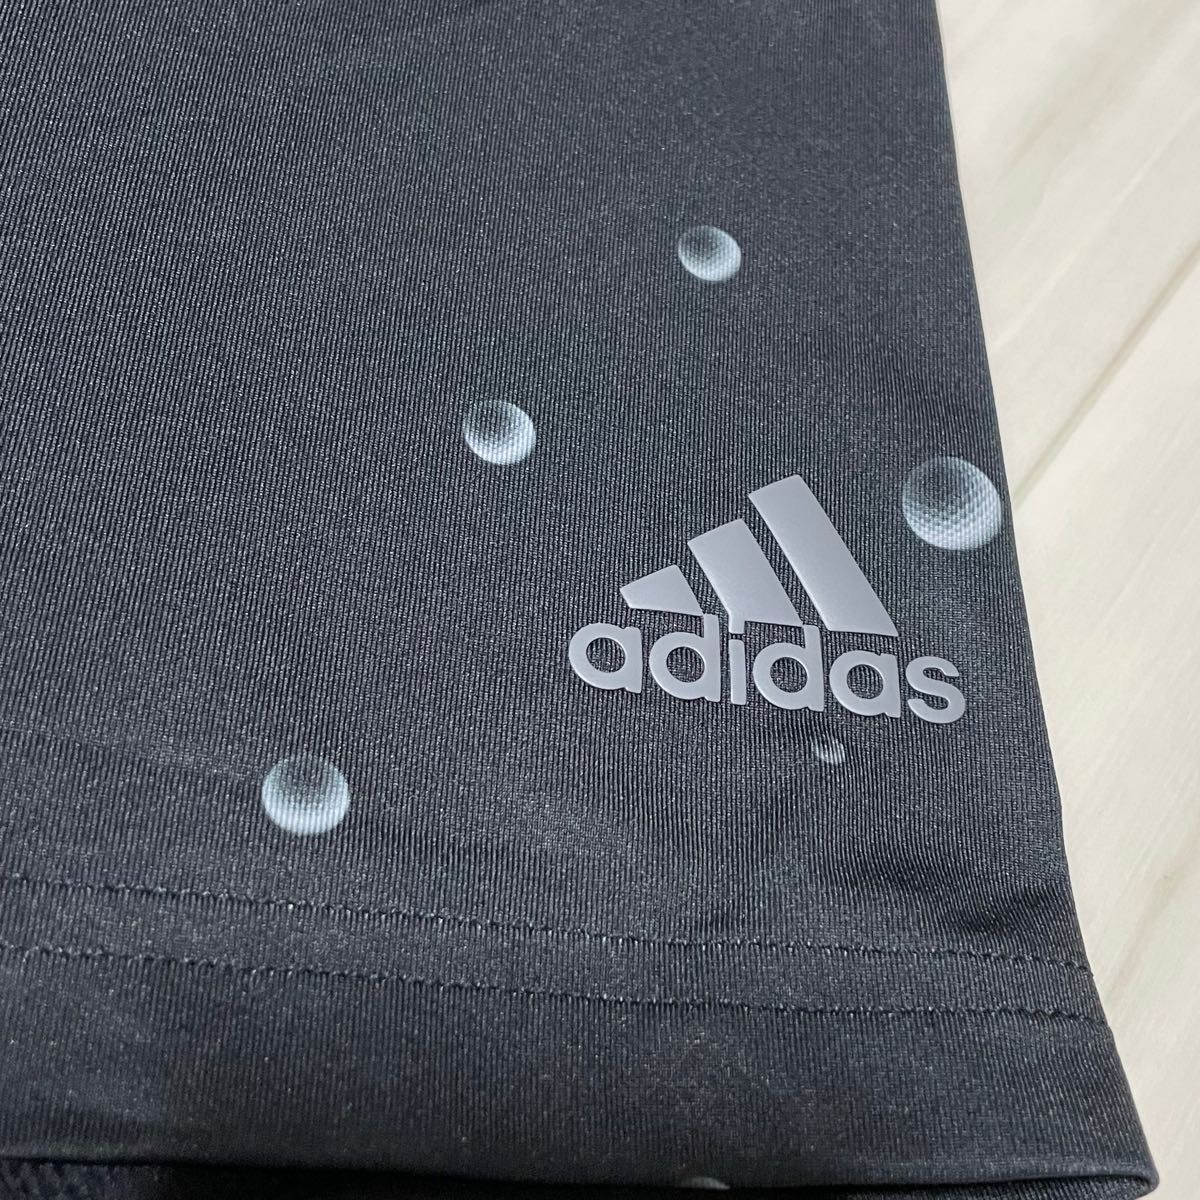 adidasアディダス 半袖ポロシャツ ネイビー系 ゴルフボール柄、サイズXL、新品未使用品です。吸汗速乾性、ストレッチ素材。 